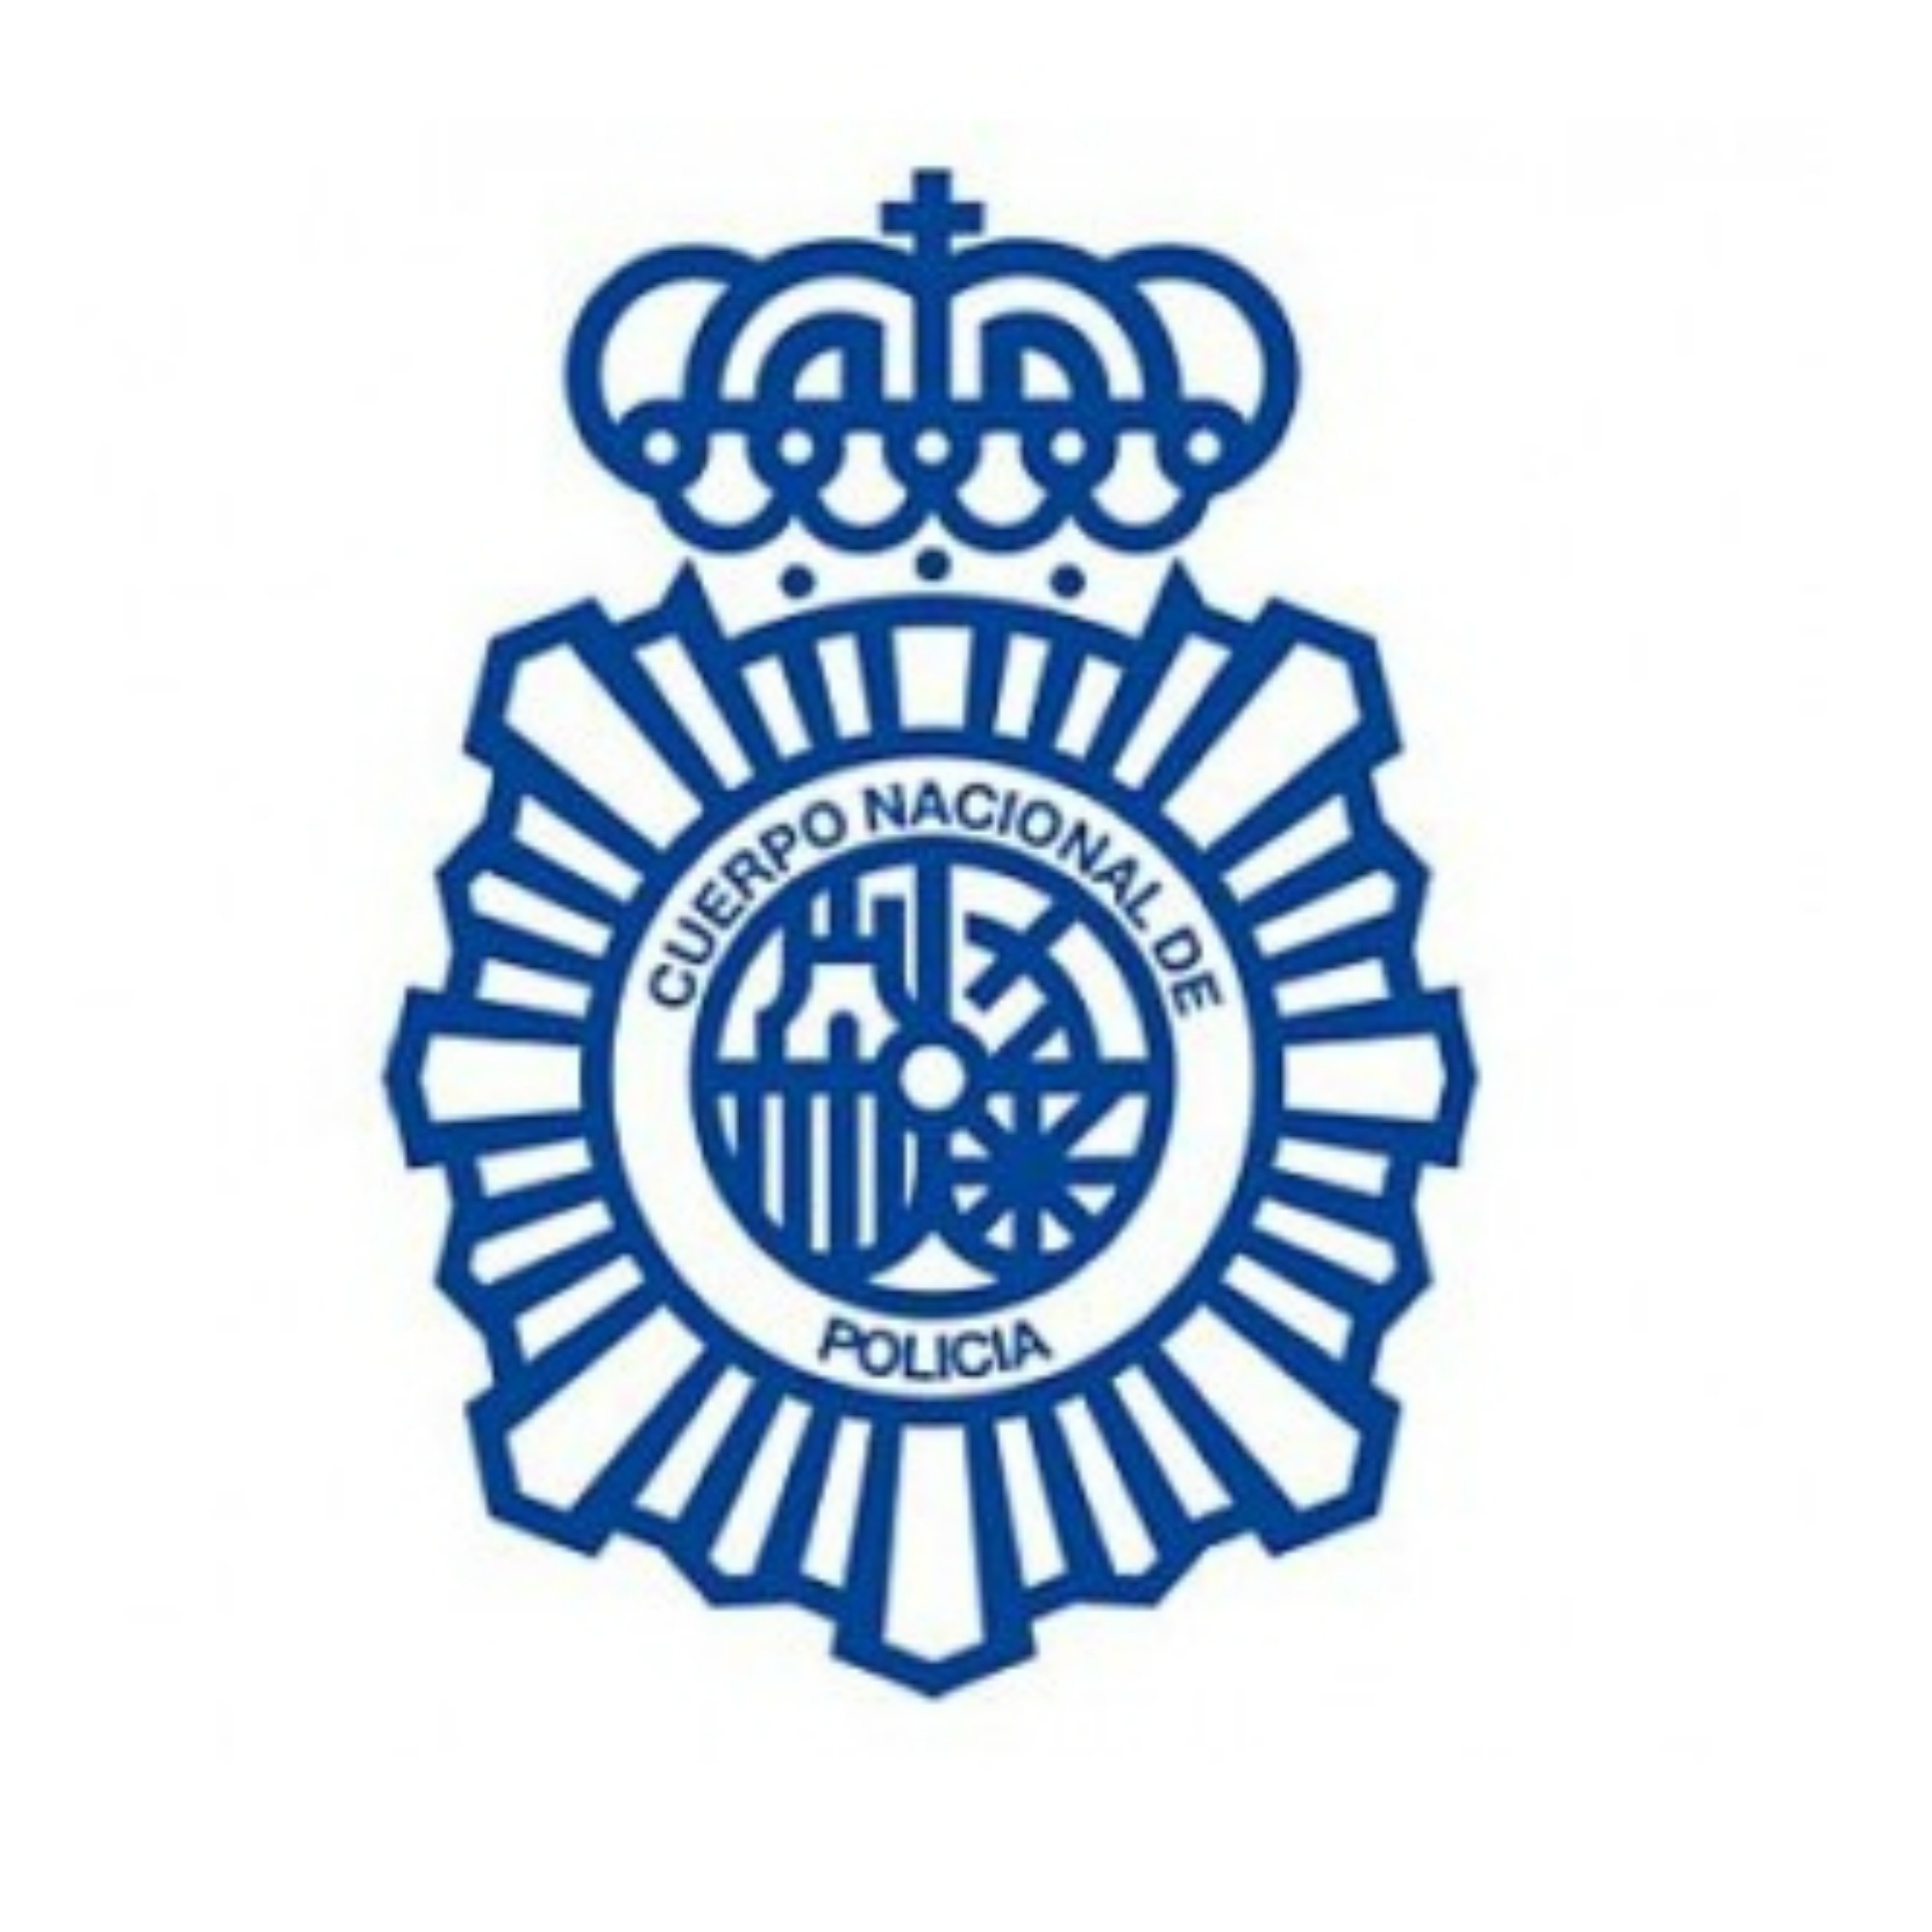 Police Nationale Urgences